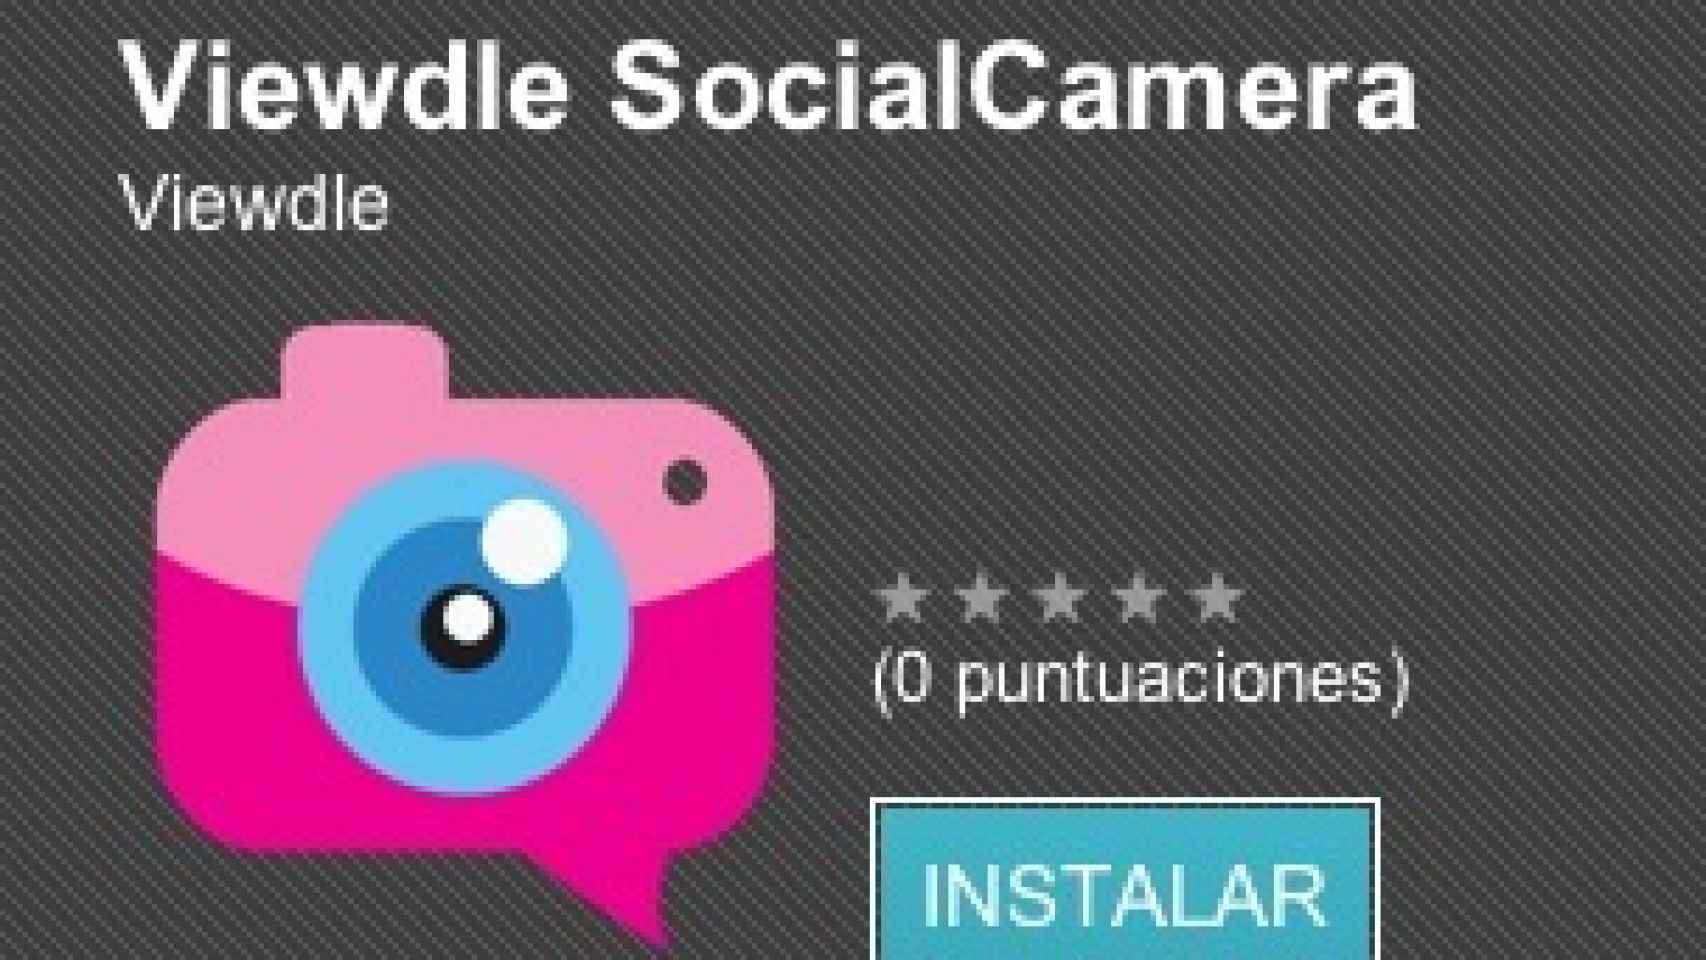 Etiqueta a tus amigos y conocidos con tu cámara de fotos: Social Camera